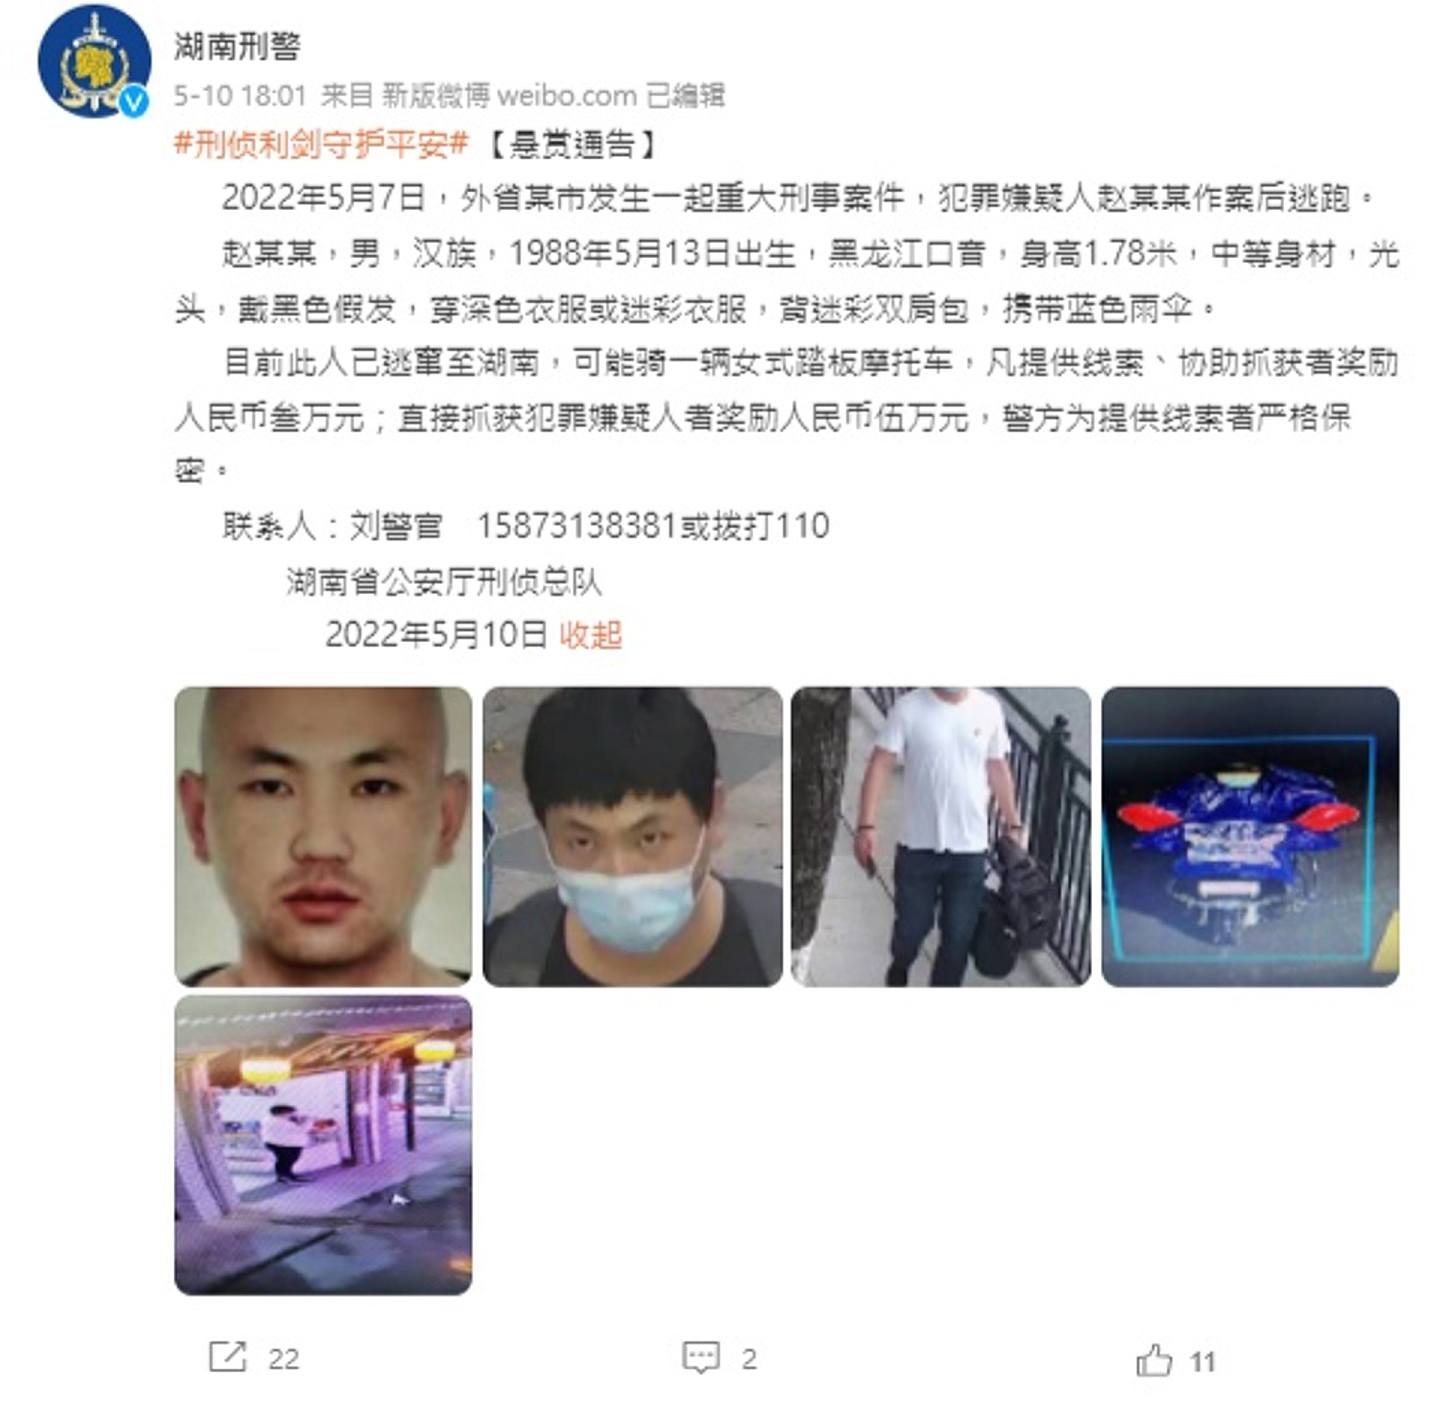 湖南当局早前曾悬红达5万元人民币缉凶，并刊登出该名为赵X龙的疑犯照片。